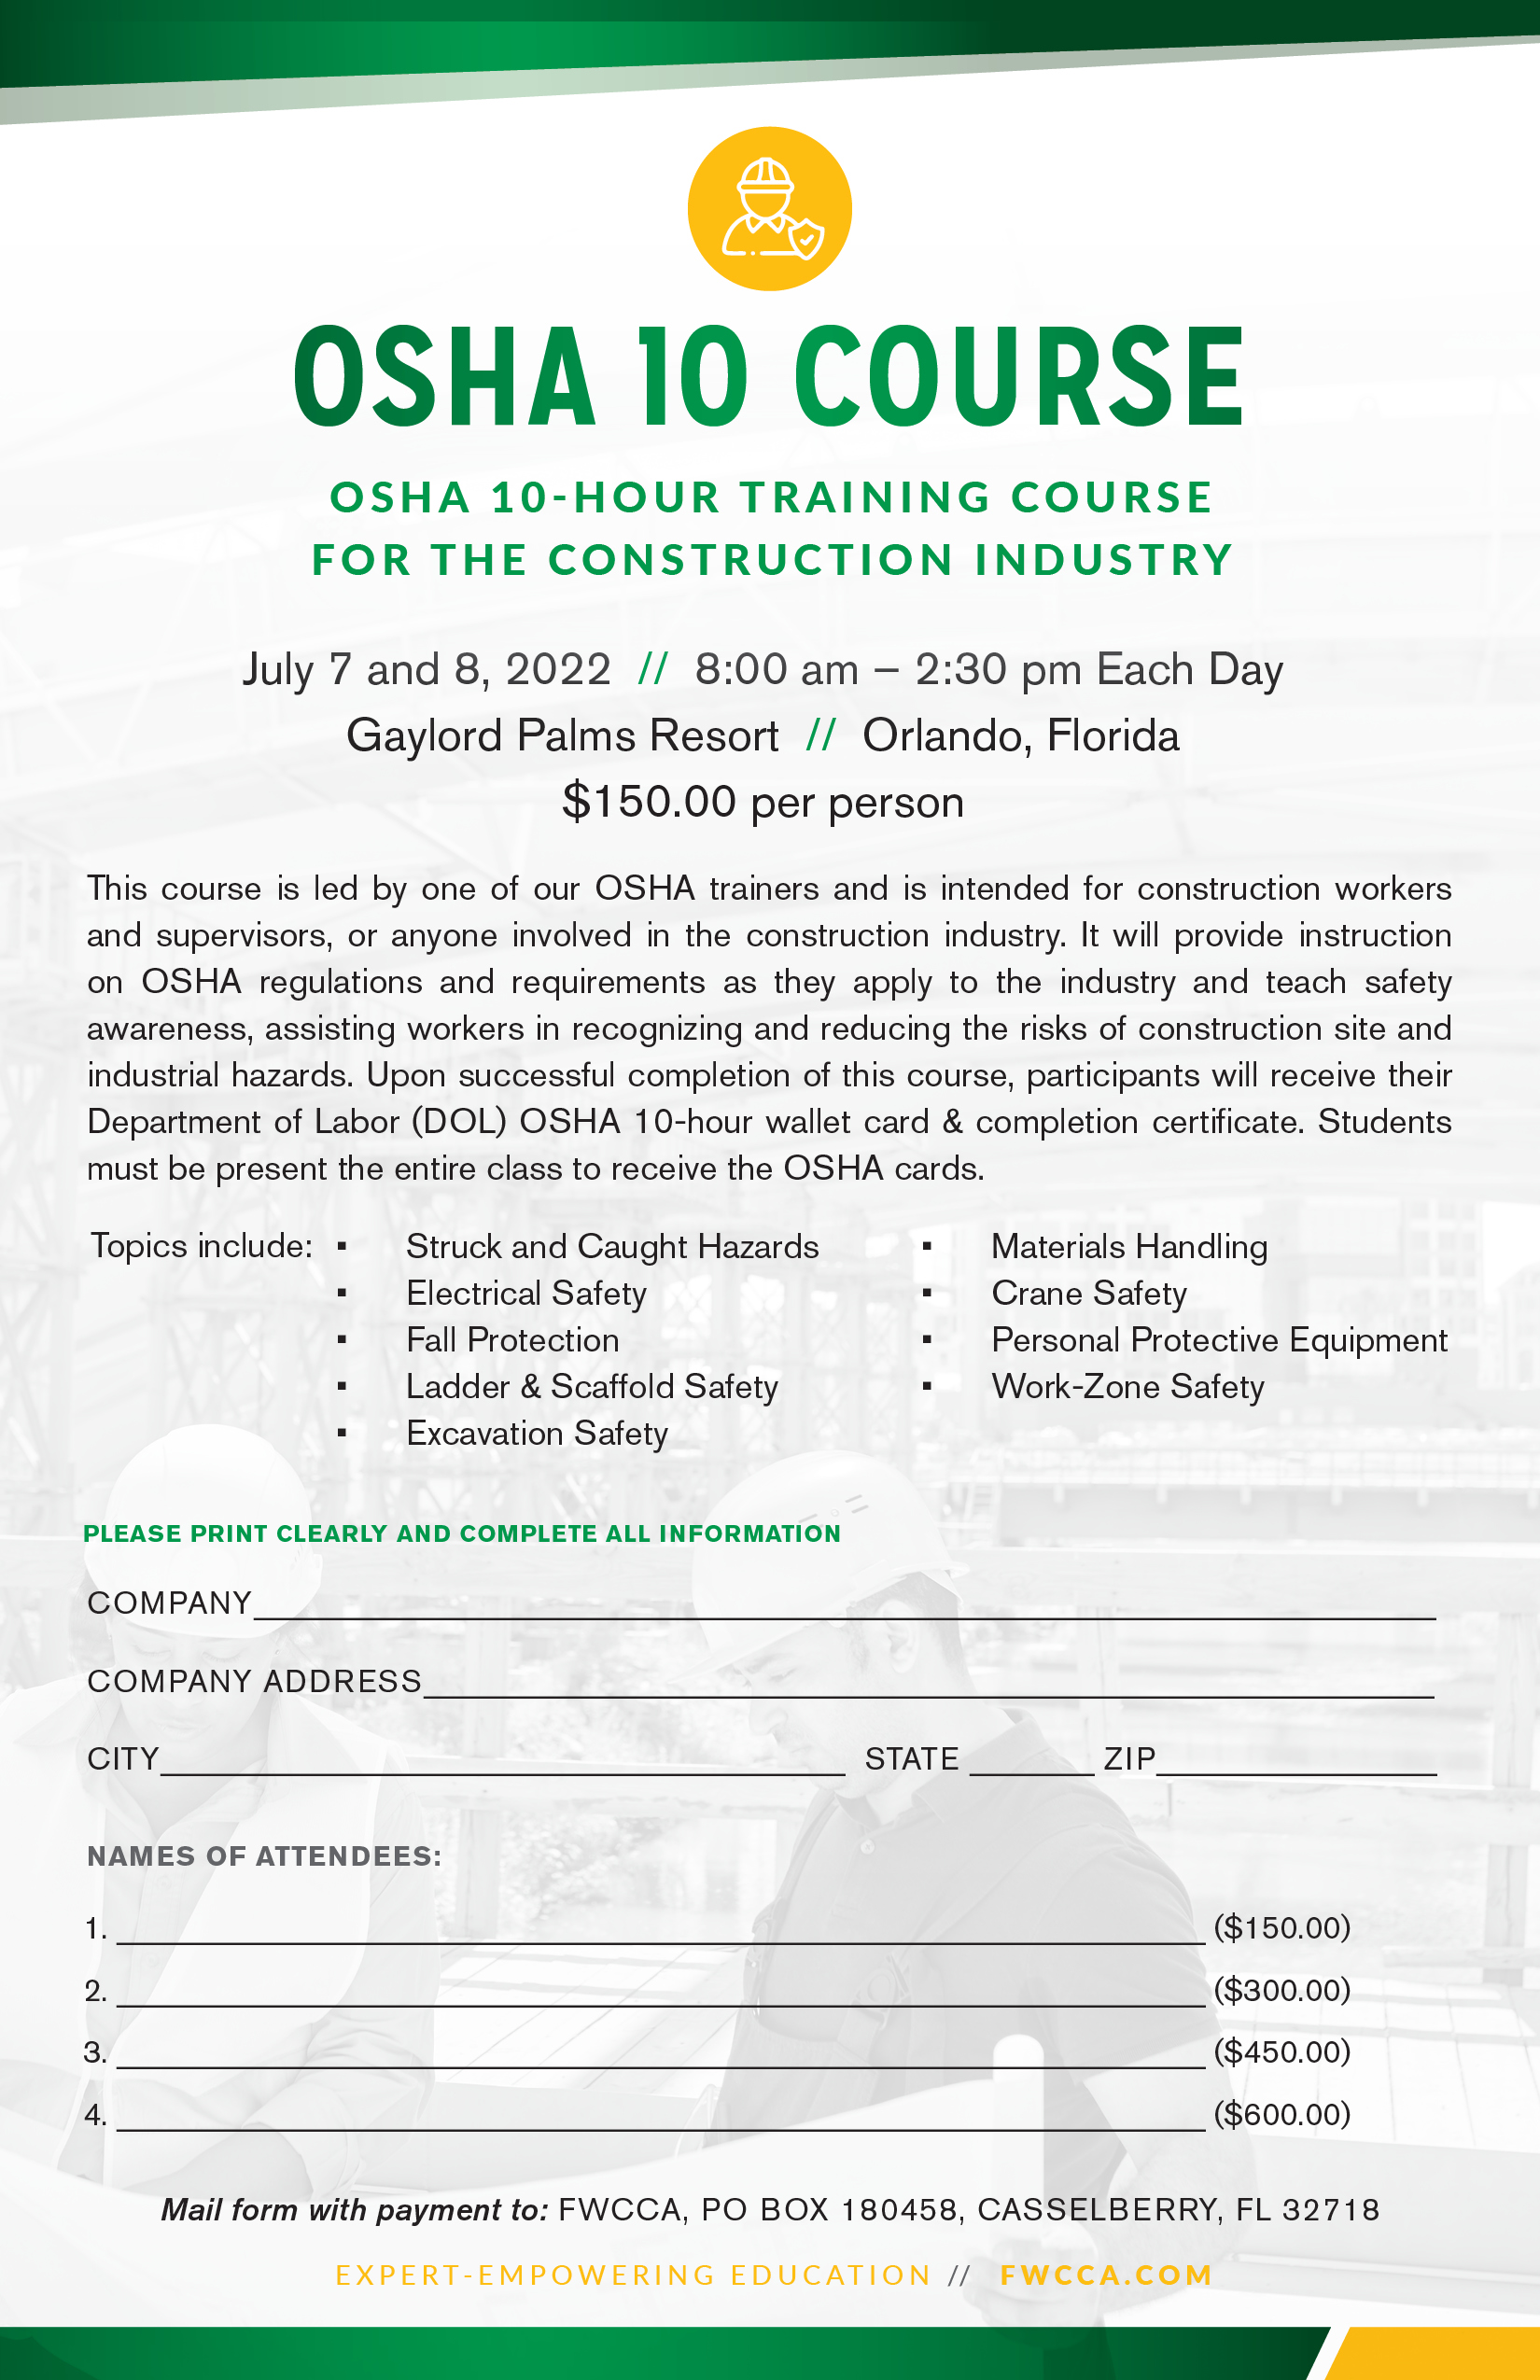 FWCCA OSHA 10 Course Flyer (002).jpg